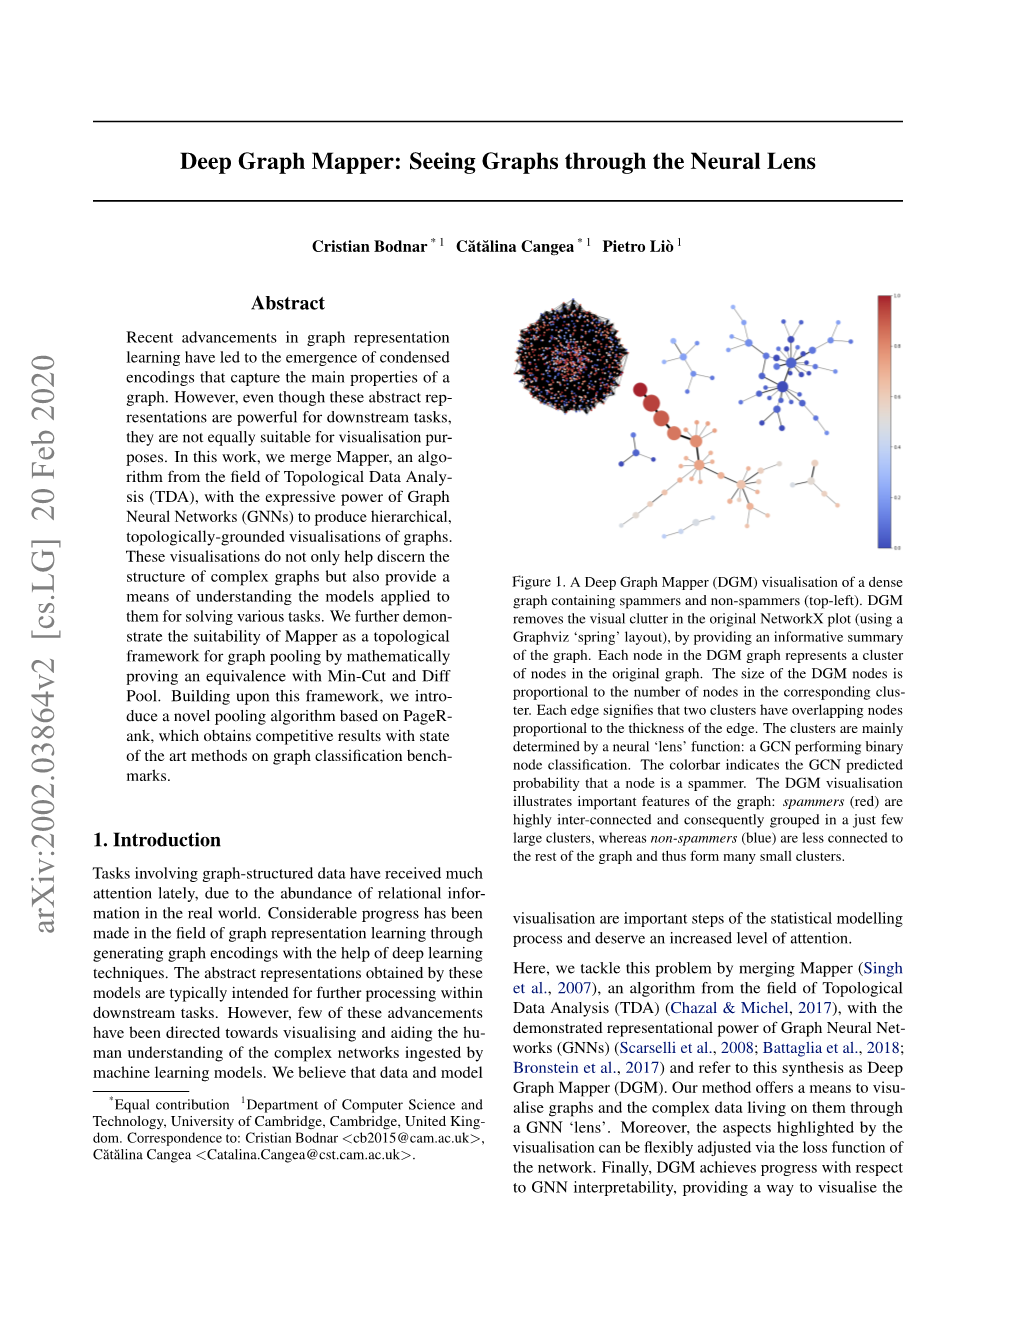 Deep Graph Mapper: Seeing Graphs Through the Neural Lens